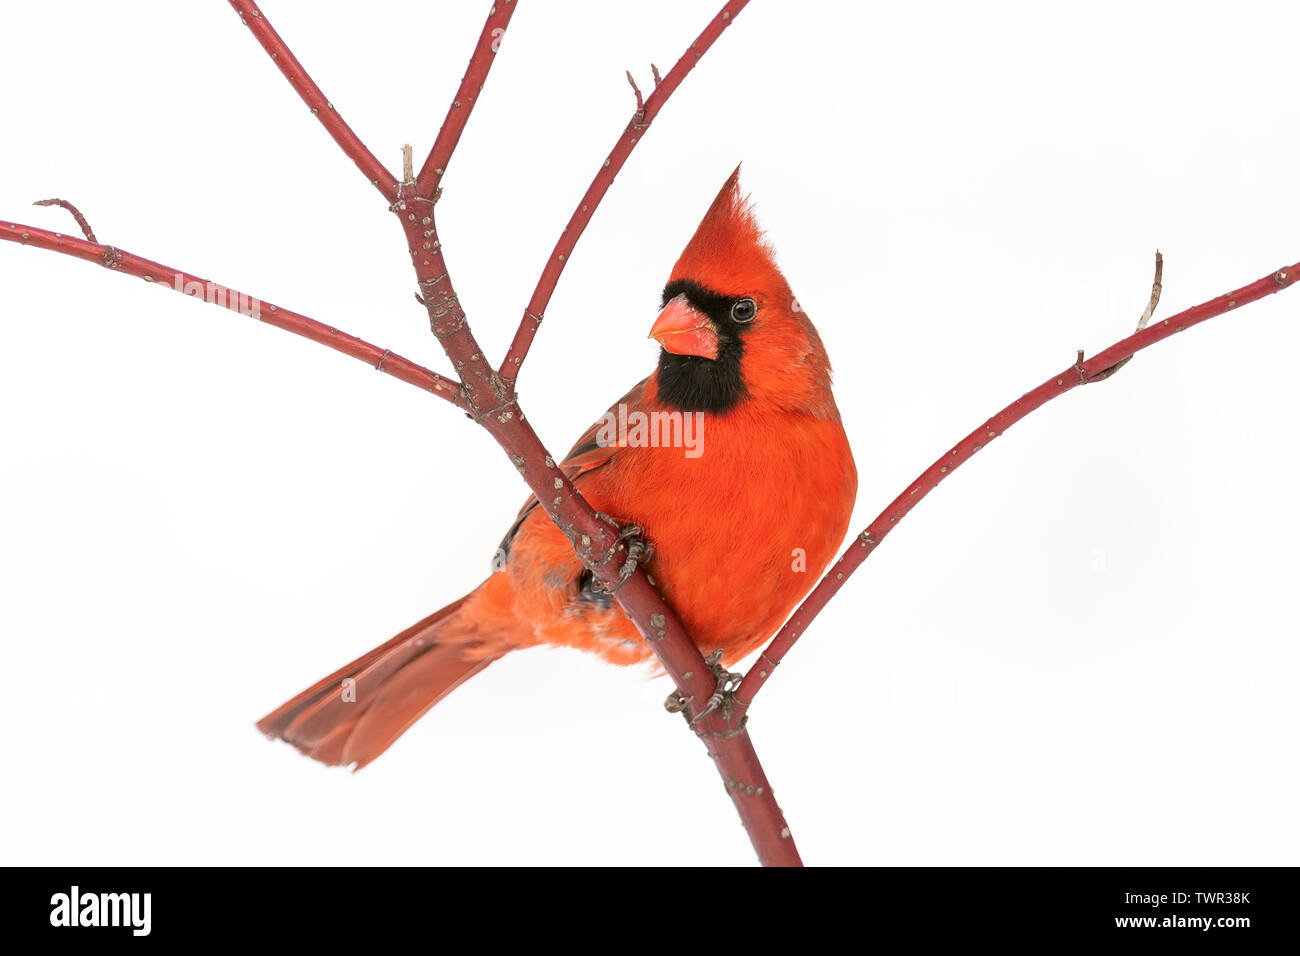 Männliche nördlichen Kardinal (Cardinalis cardinalis), Winter, E Nordamerika, von Dominique Braud/Dembinsky Foto Assoc Stockfoto